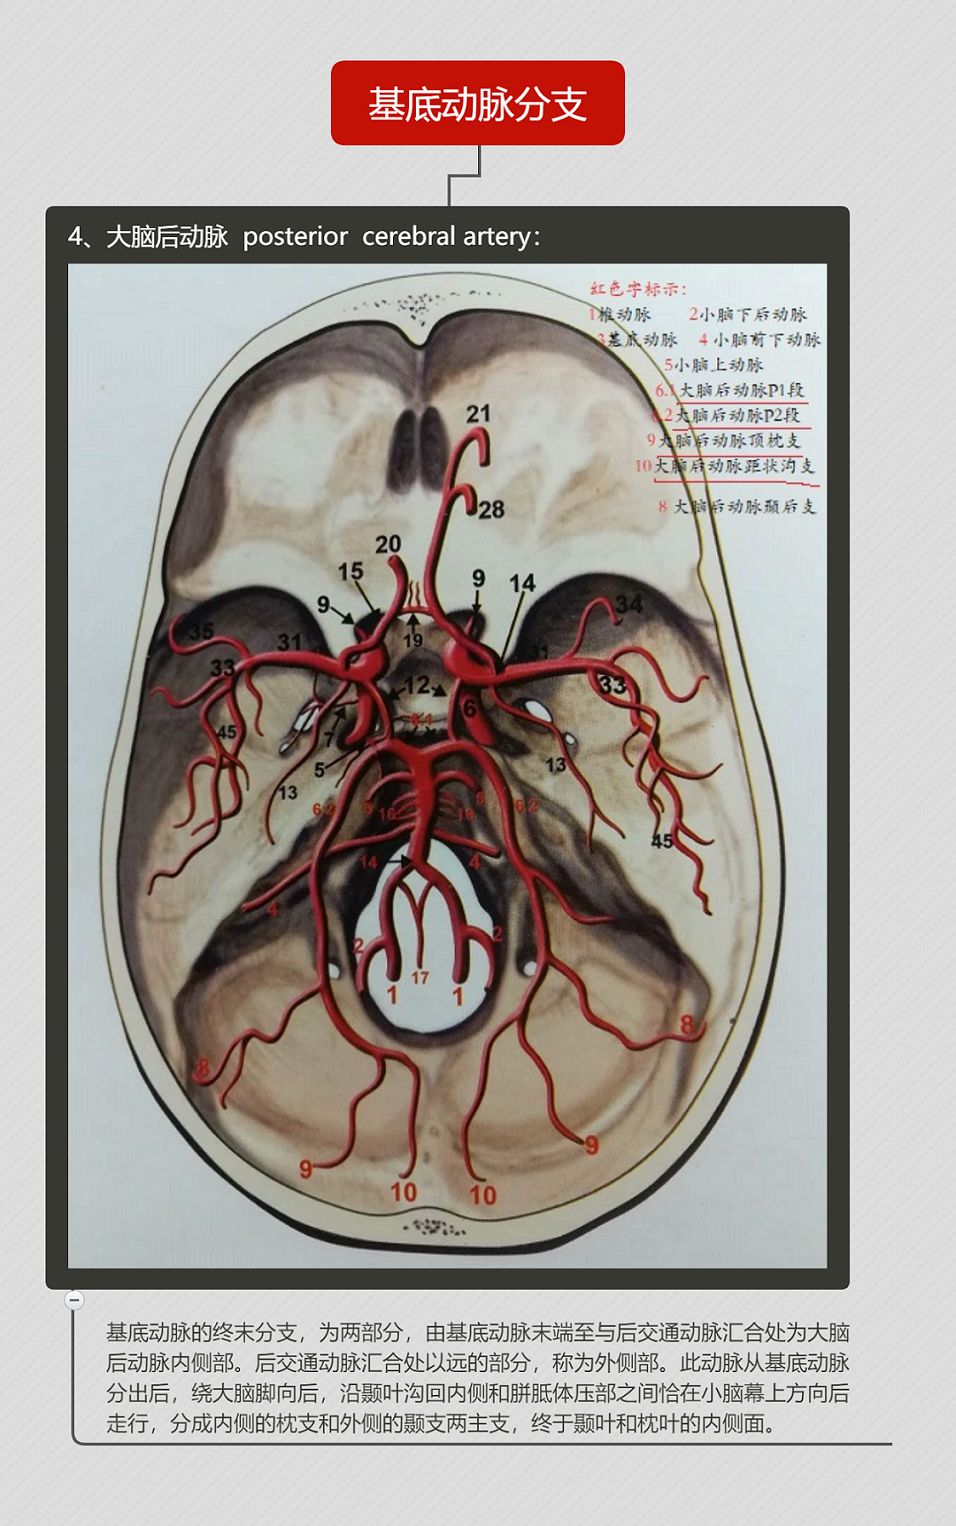 椎动脉的特点: 3 4 5 小脑后下动脉的分段, 6 7 基底动脉脑桥支